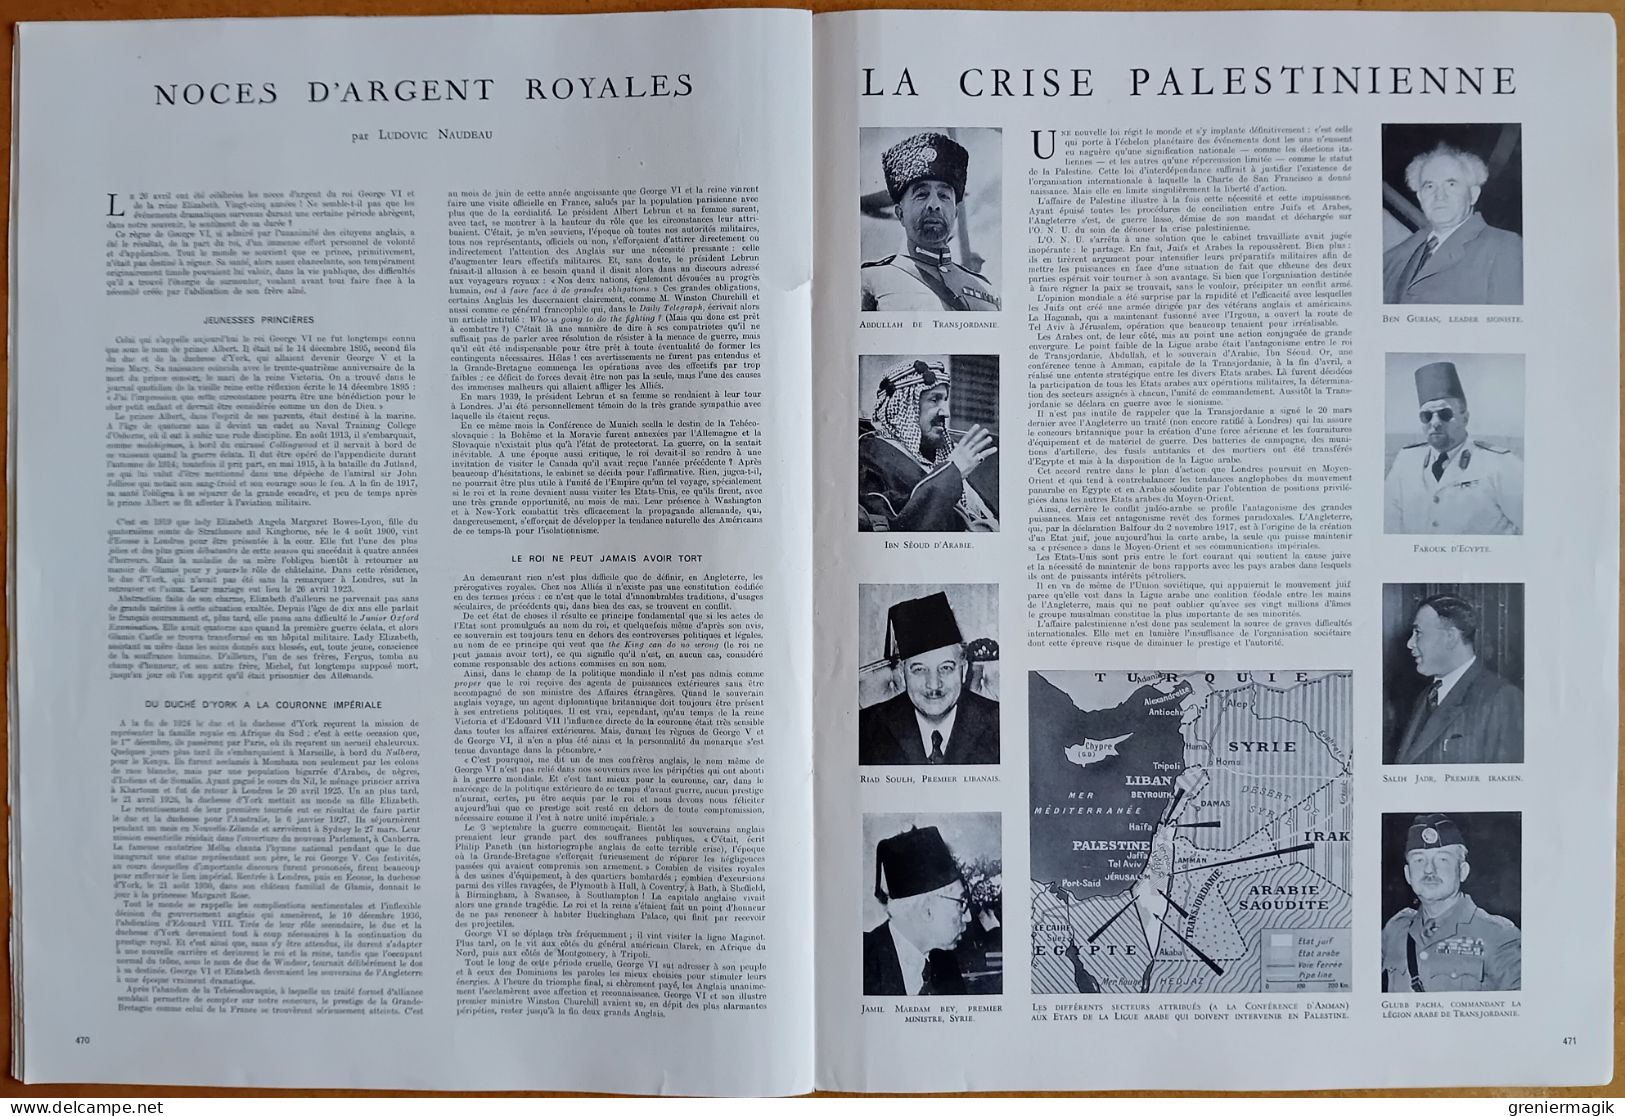 France Illustration N°136 08/05/1948 Palestine/Expéditions polaires par Paul-Emile Victor/Jubilé George VI et Elizabeth